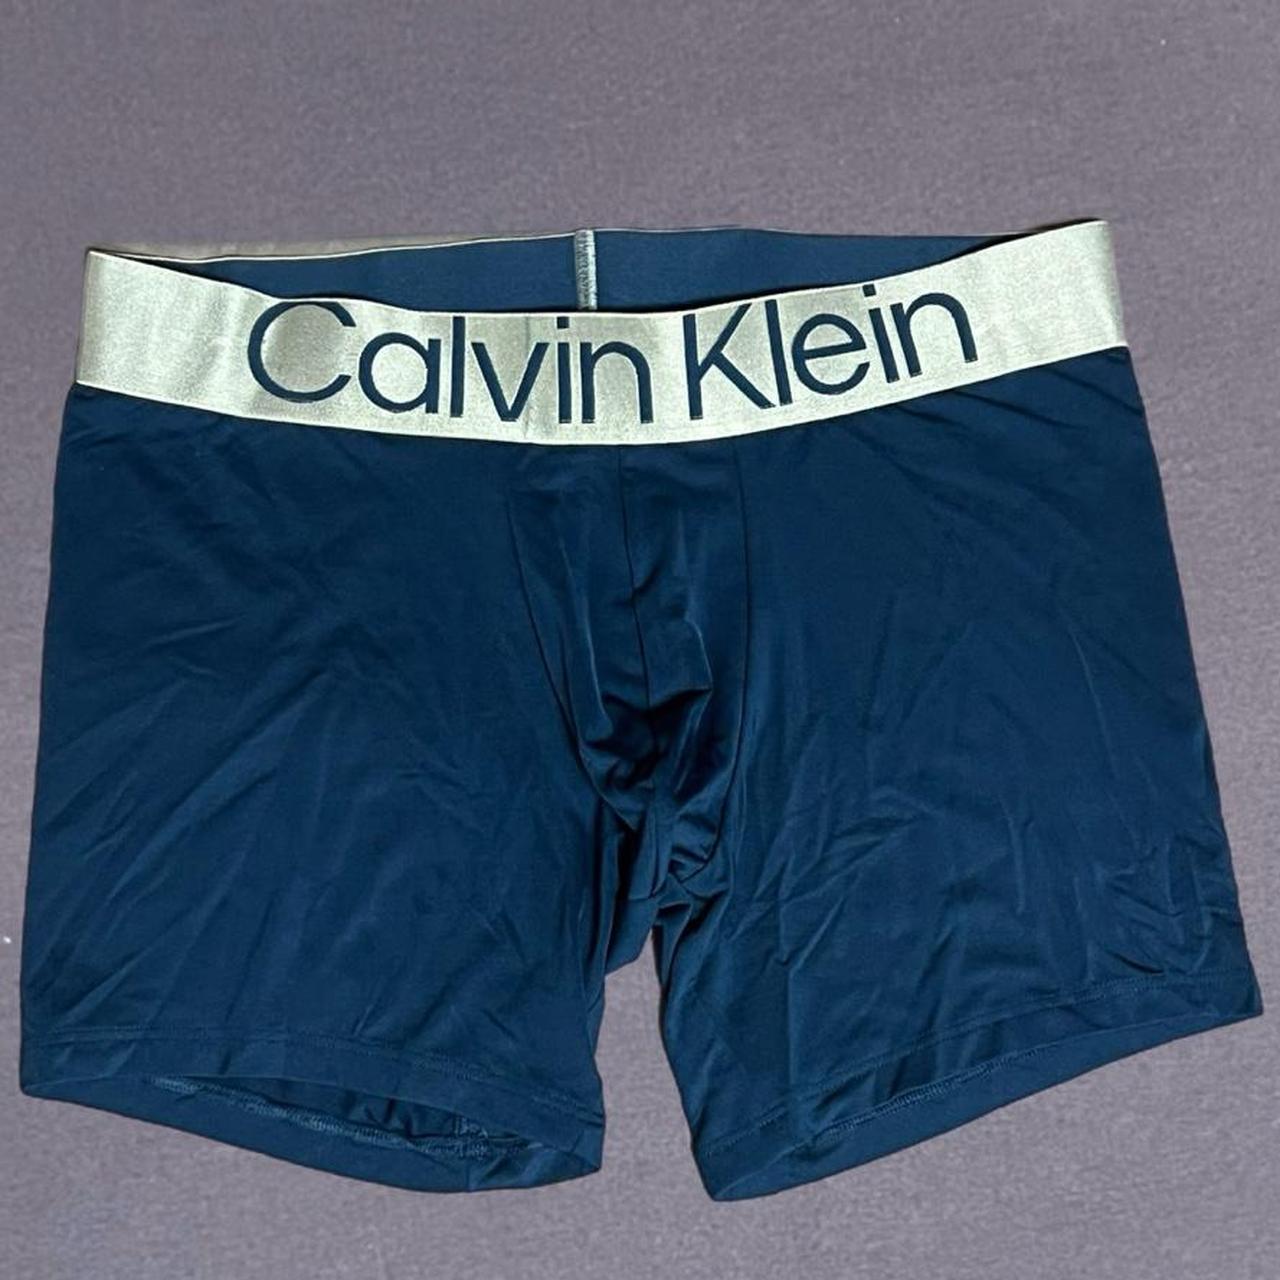 Calvin klein-boxer - Depop